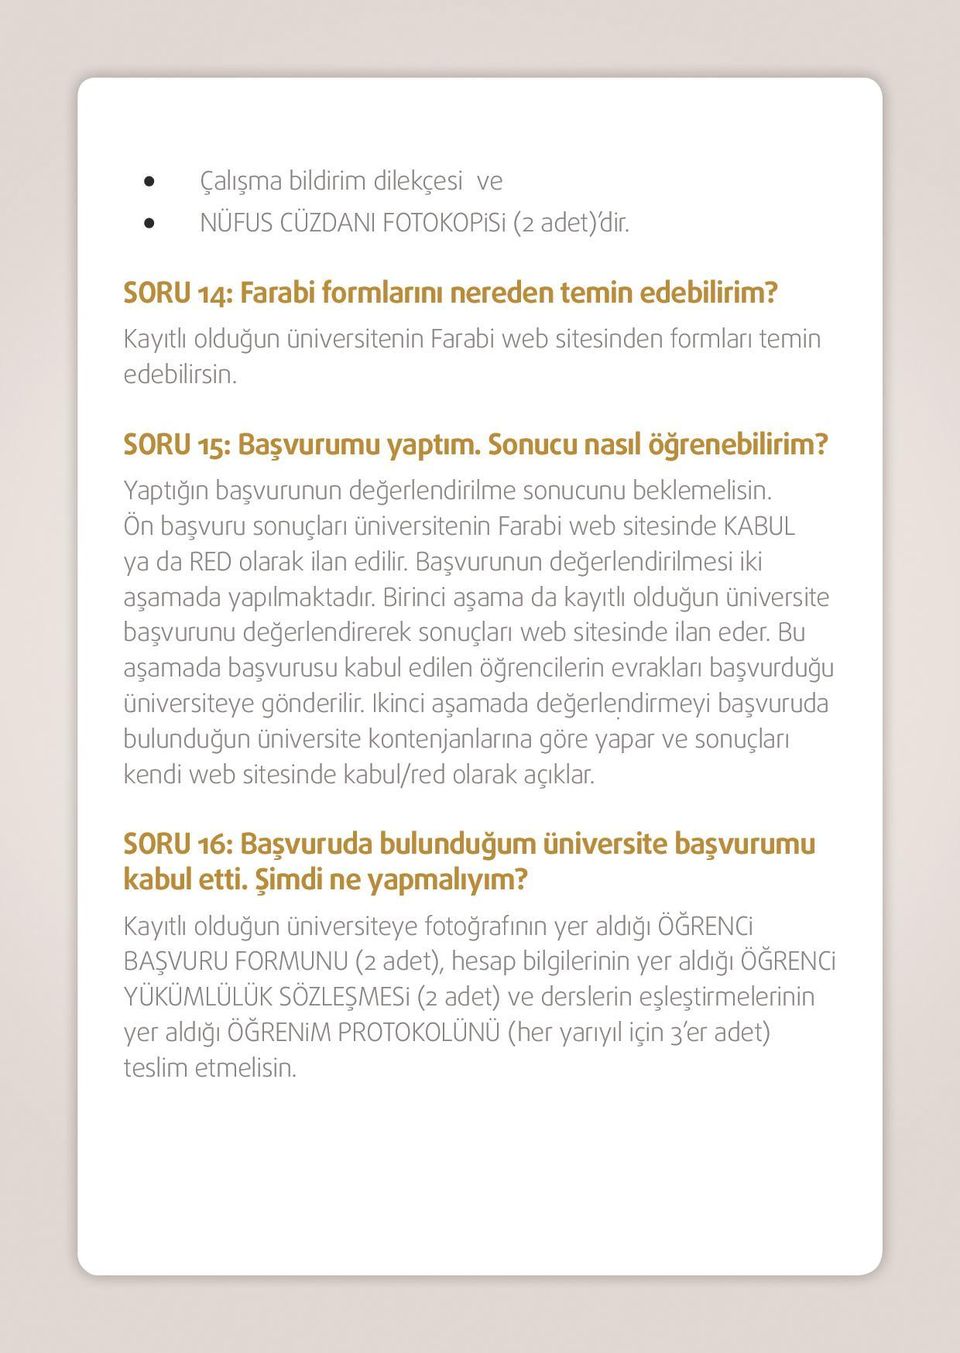 Ön başvuru sonuçları üniversitenin Farabi web sitesinde KABUL ya da RED olarak ilan edilir. Başvurunun değerlendirilmesi iki aşamada yapılmaktadır.